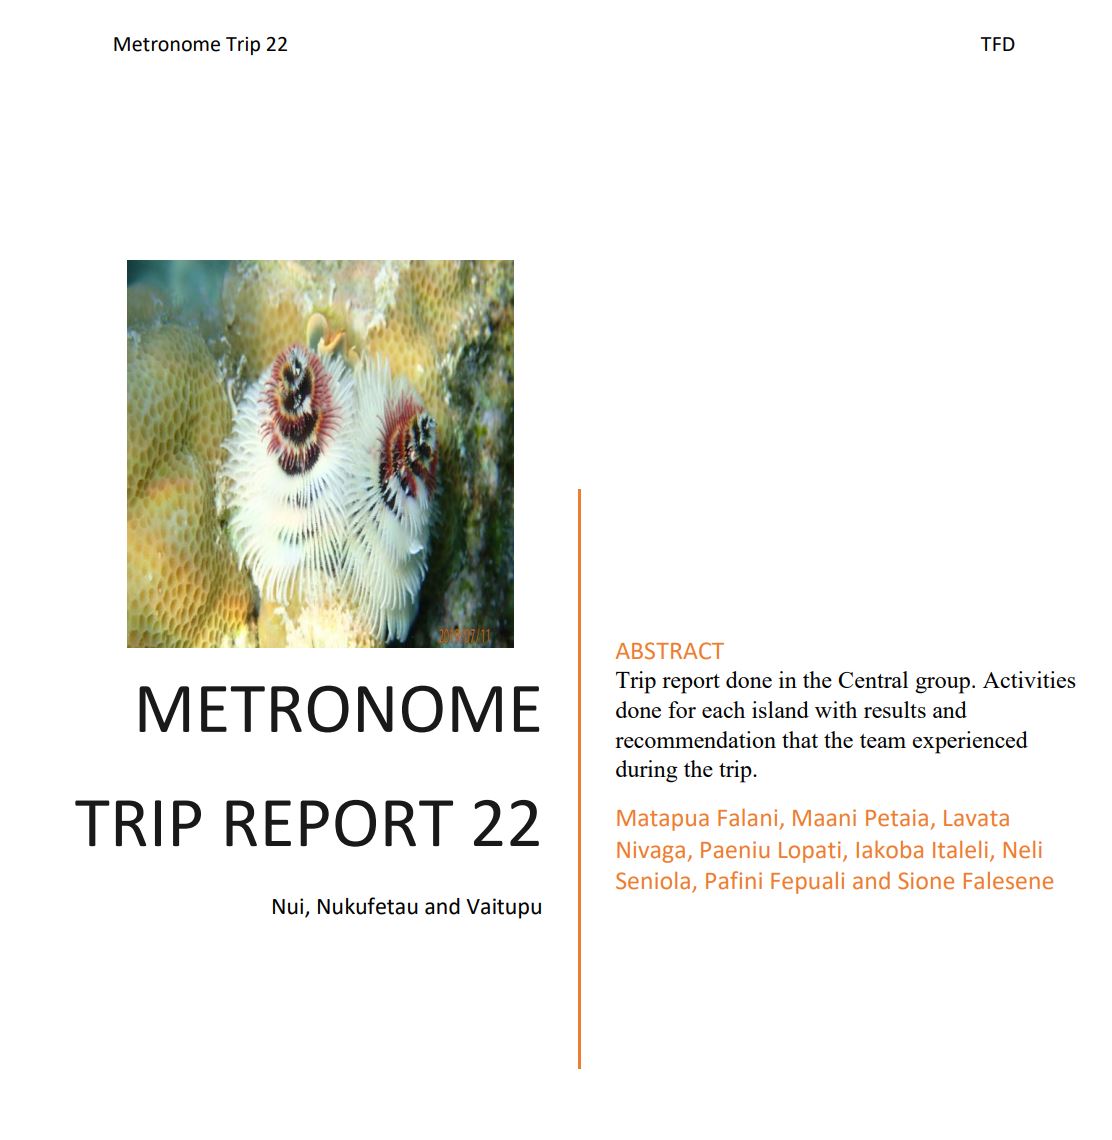 Metro 22 Trip Report